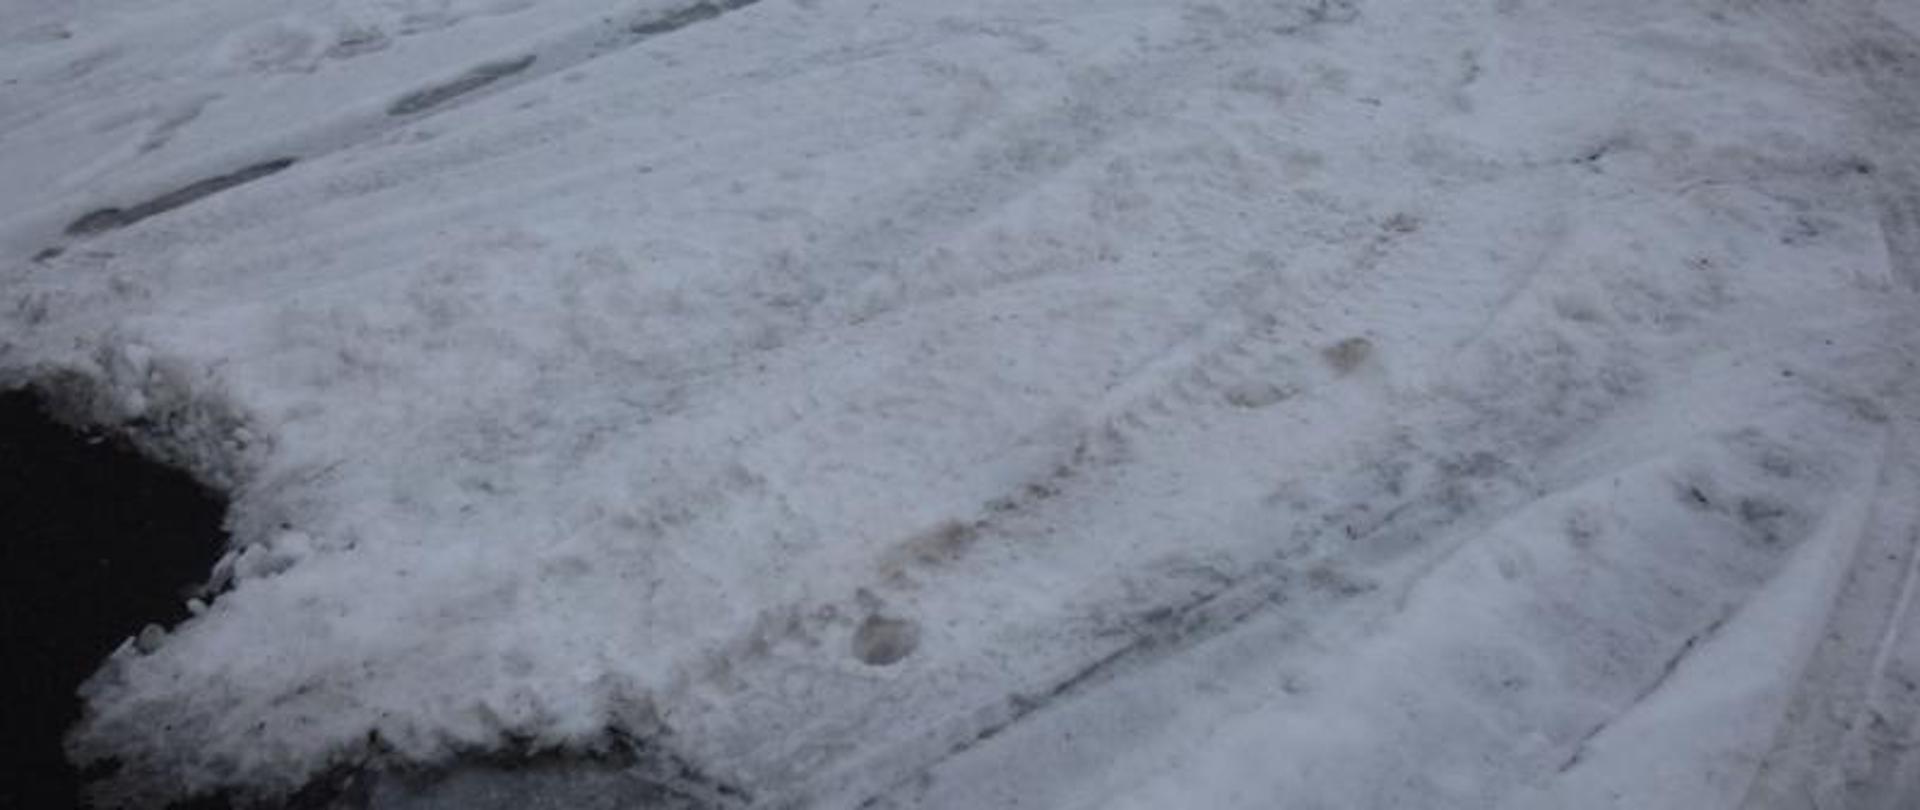 zdjęcie ilustracyjne przedstawia trudne warunki drogowe w okresie zimowym 